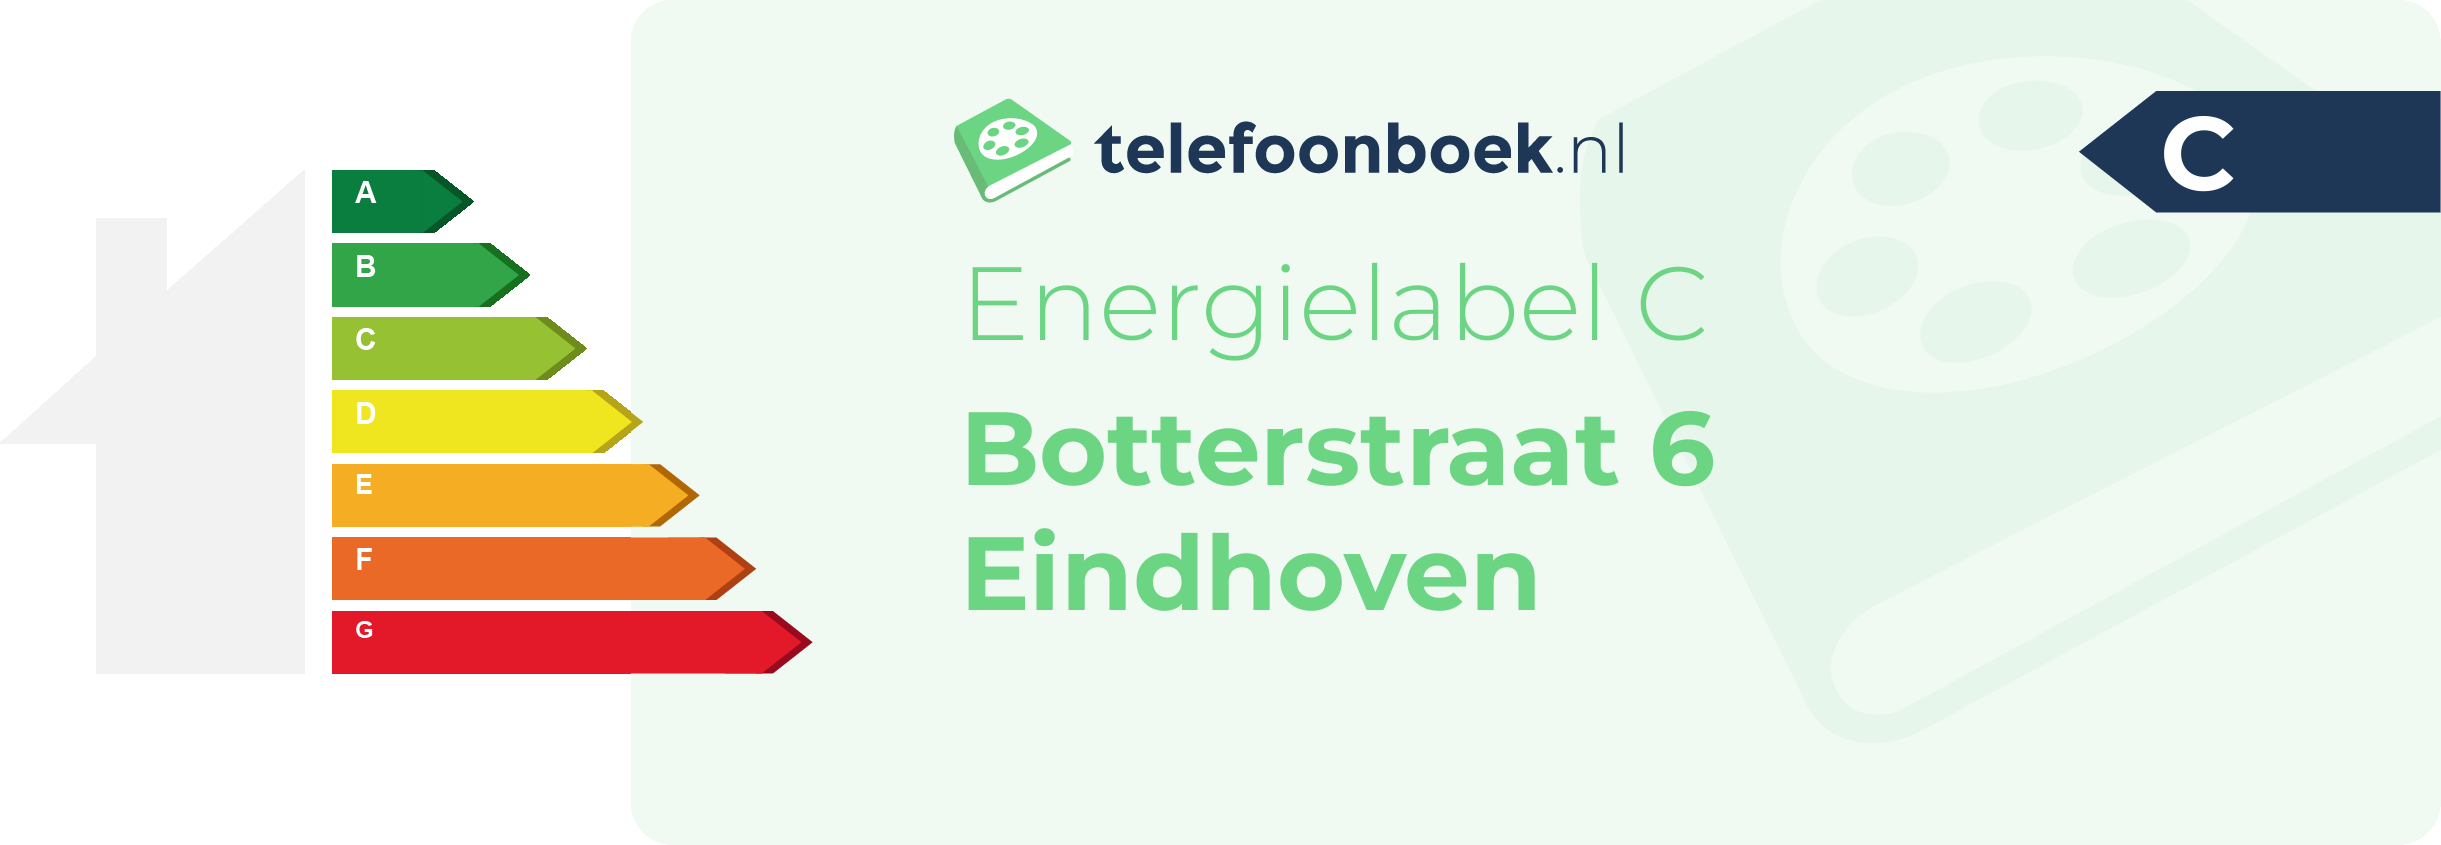 Energielabel Botterstraat 6 Eindhoven